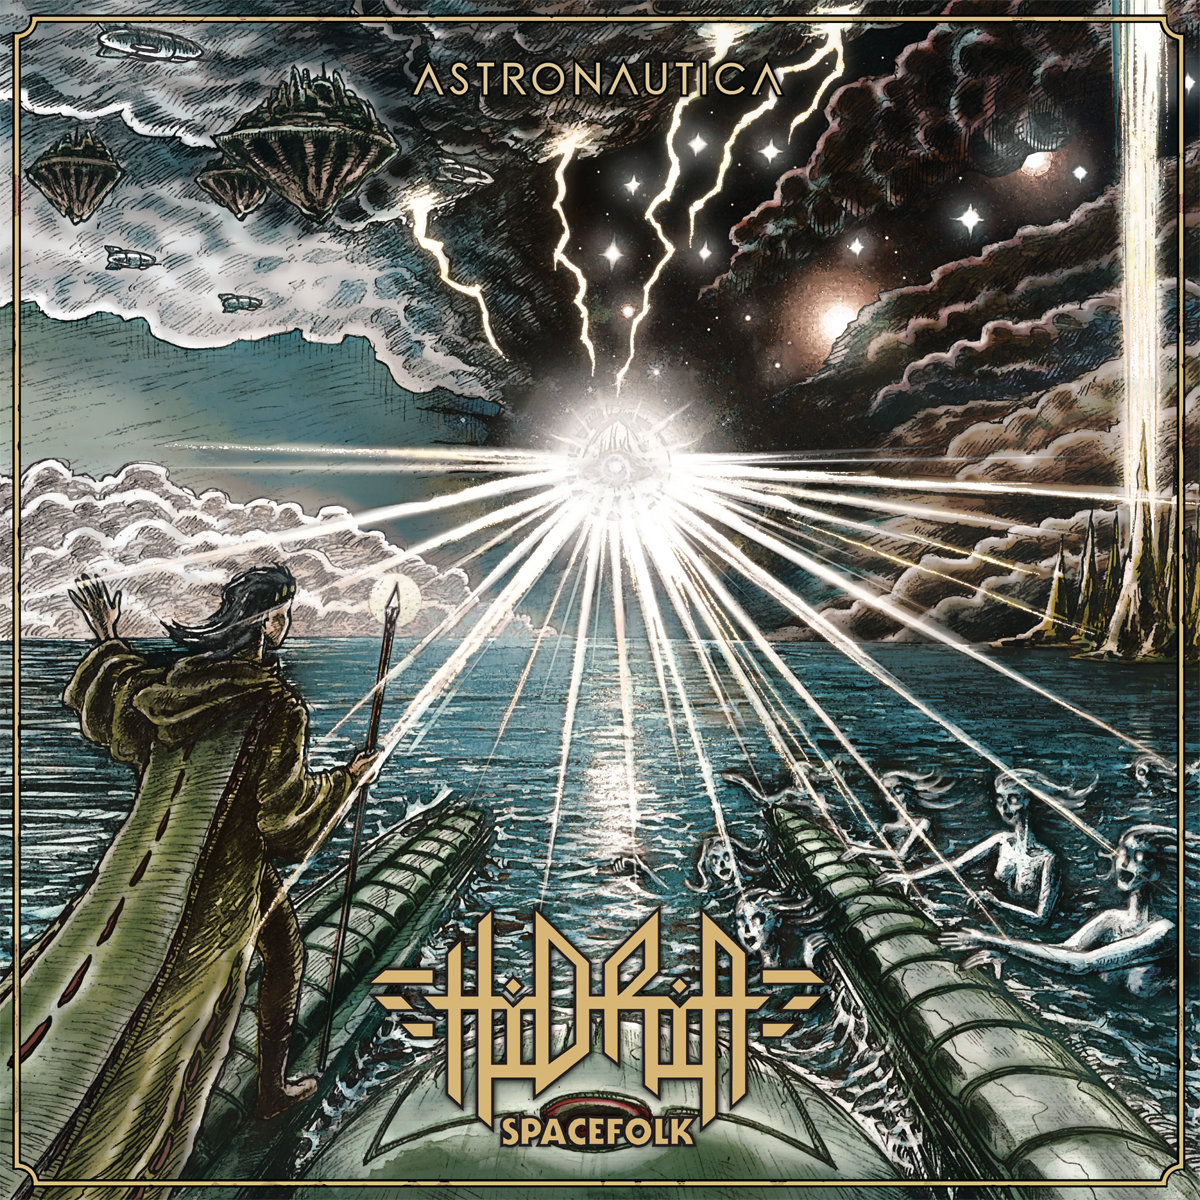 Hidria Spacefolk - Ad Astra @ 'Astronautica' album (alternative, astrobeat)